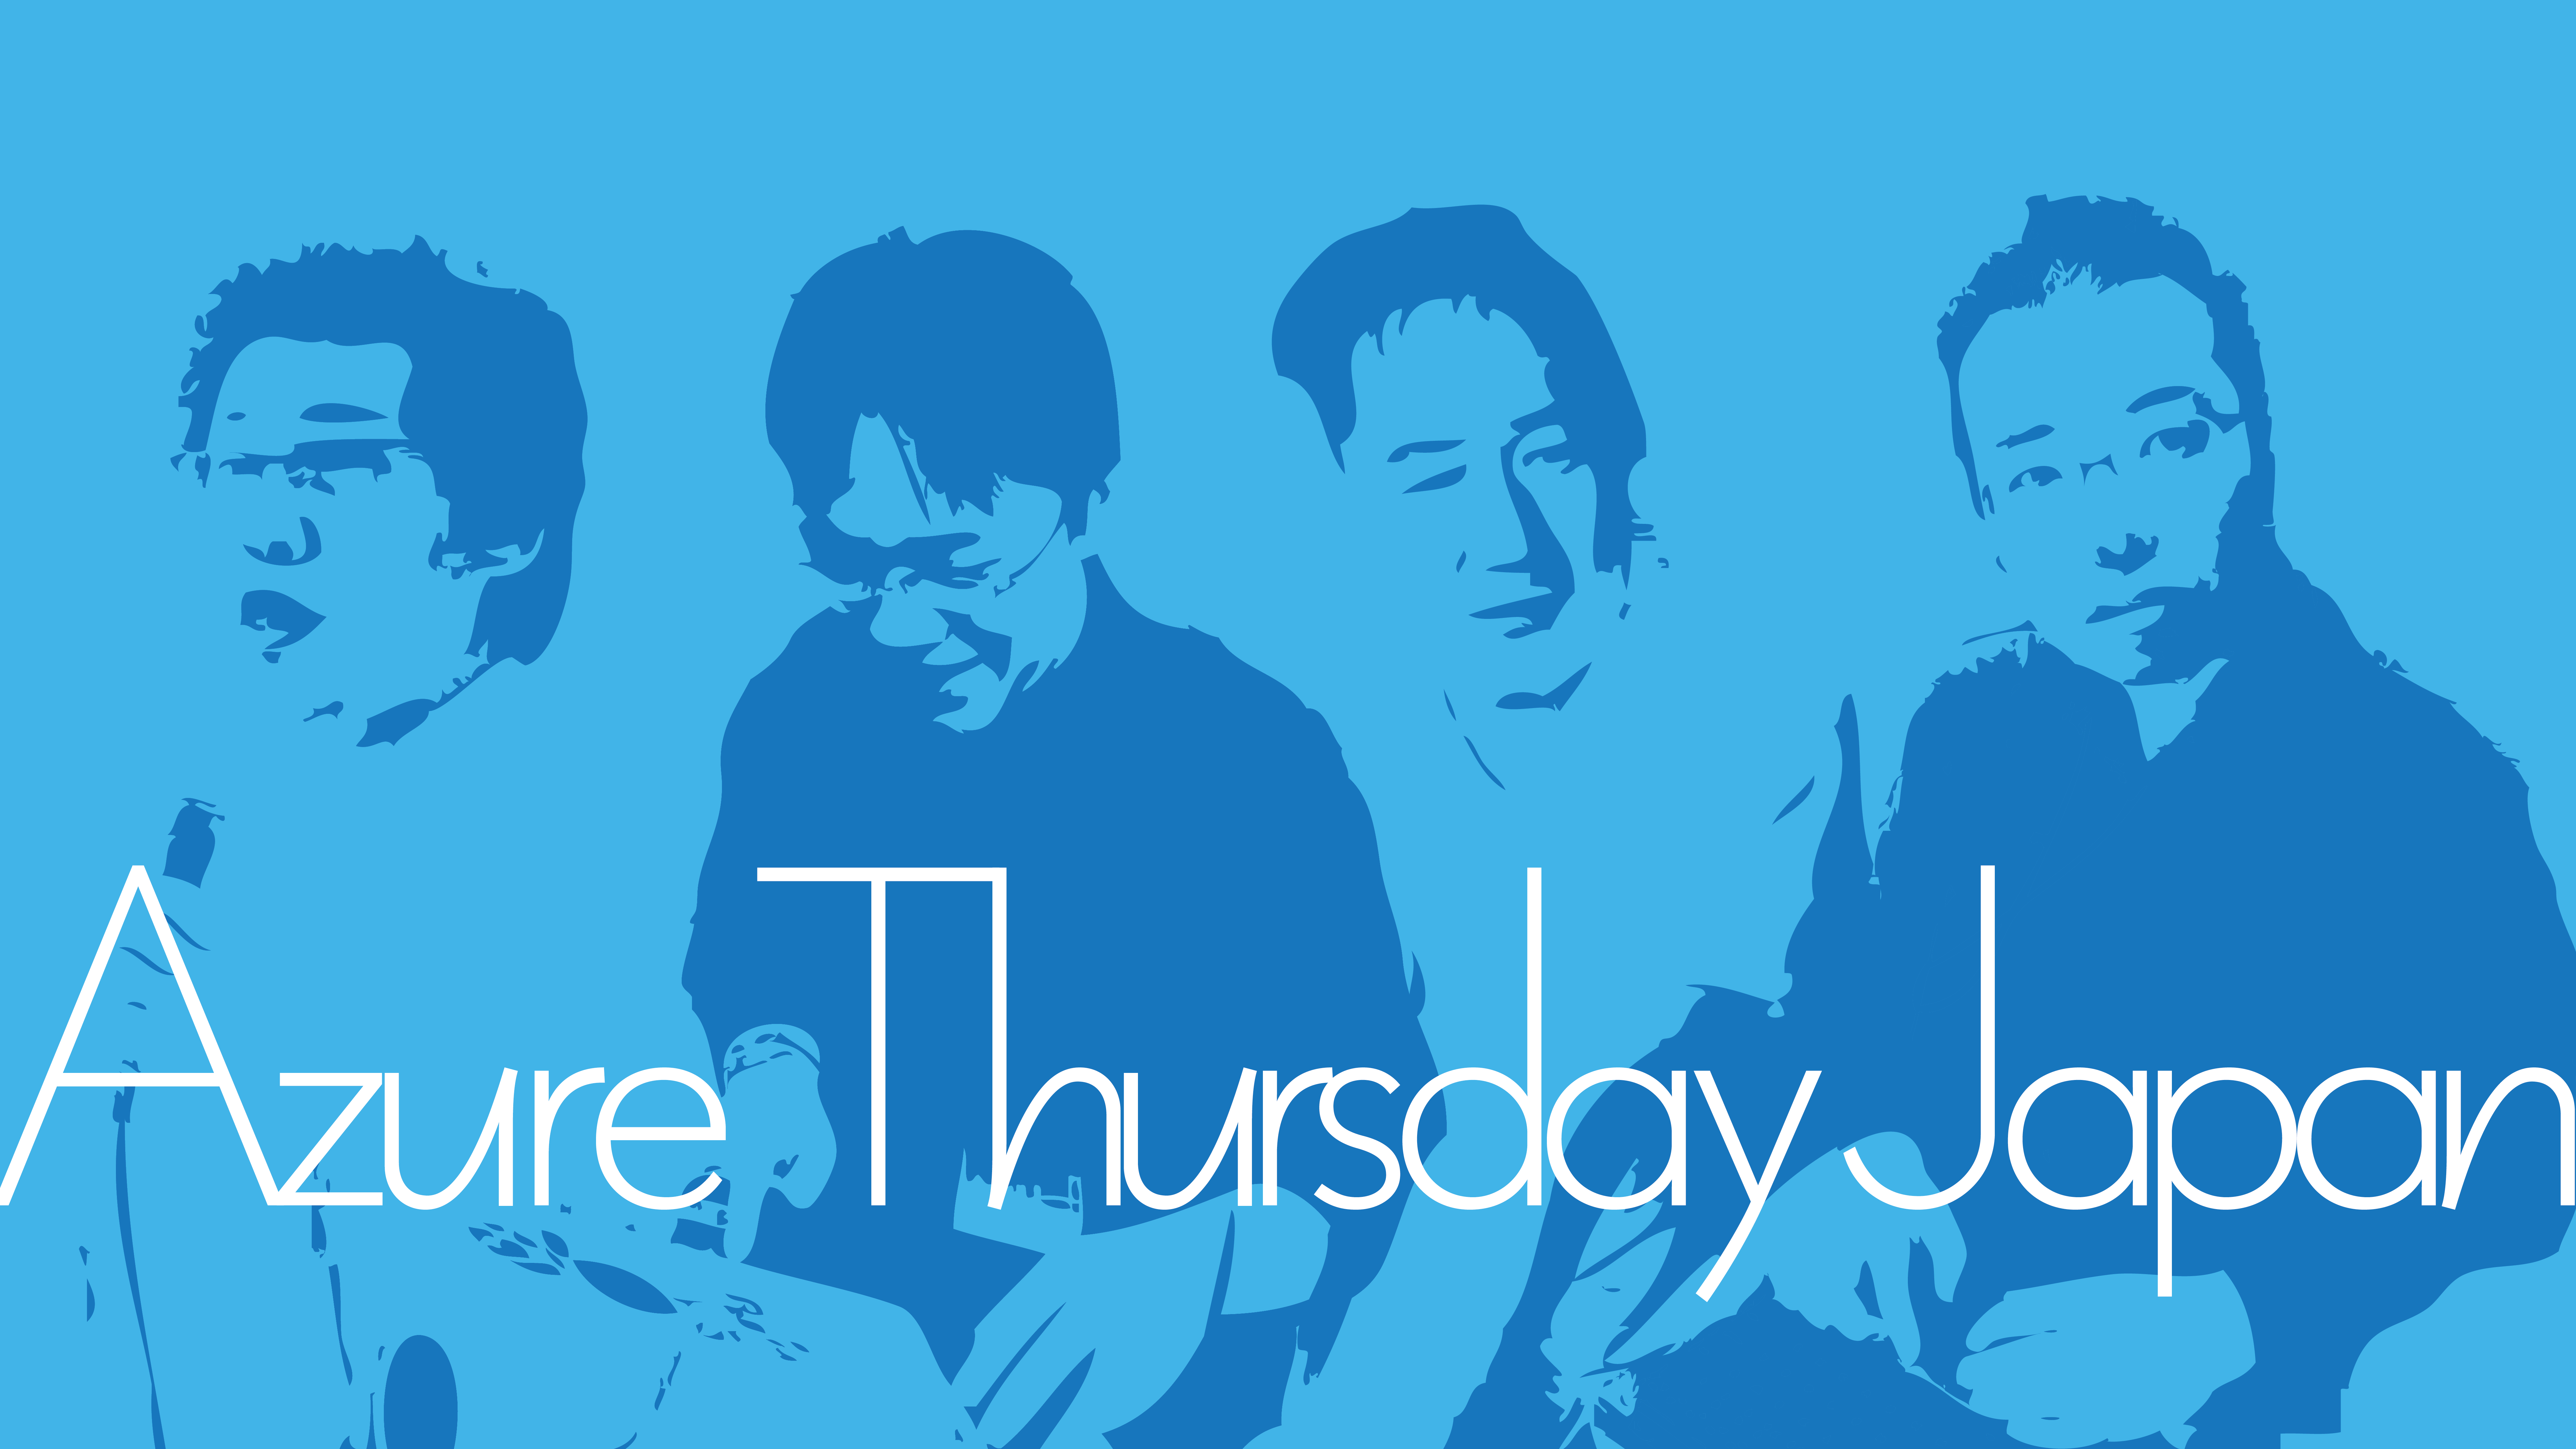 Azure Thursday Japan Title image